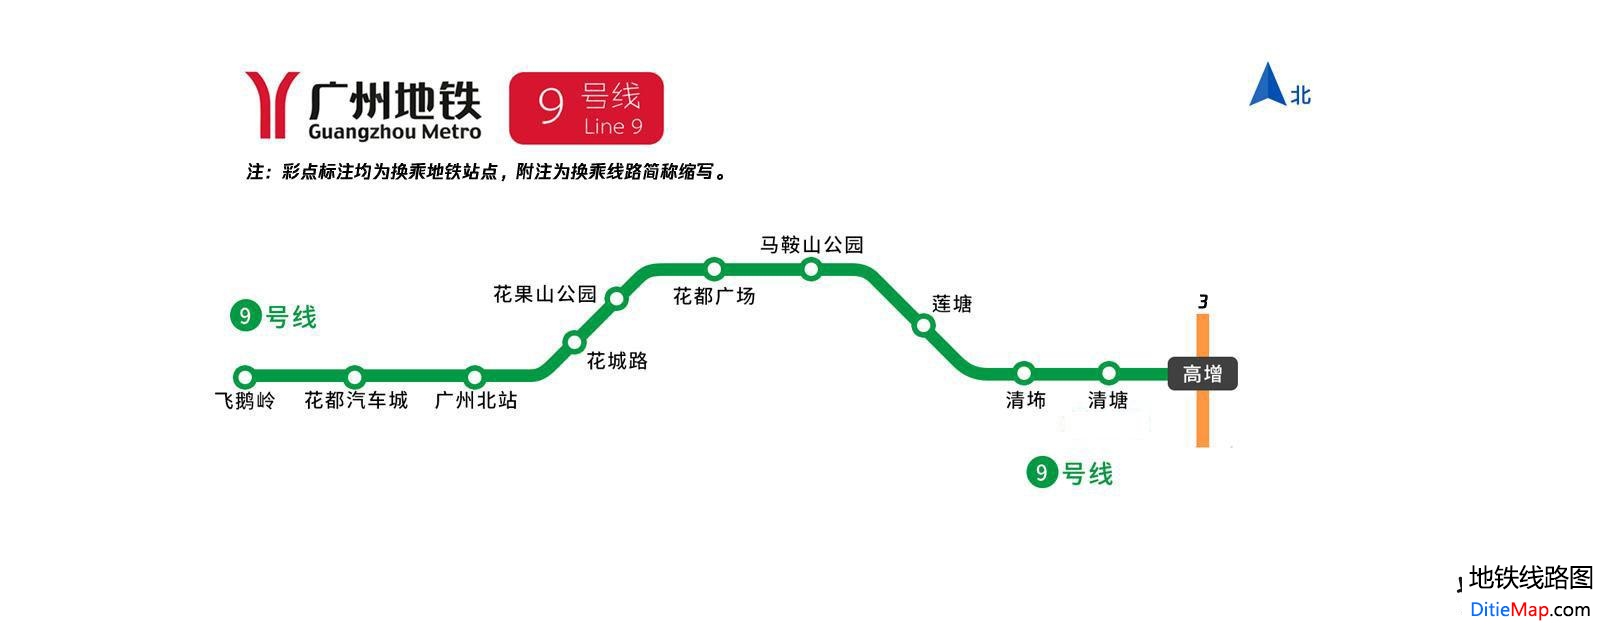 广州地铁9号线线路图 广州地铁9号线 广州地铁九号线 广州地铁线路图